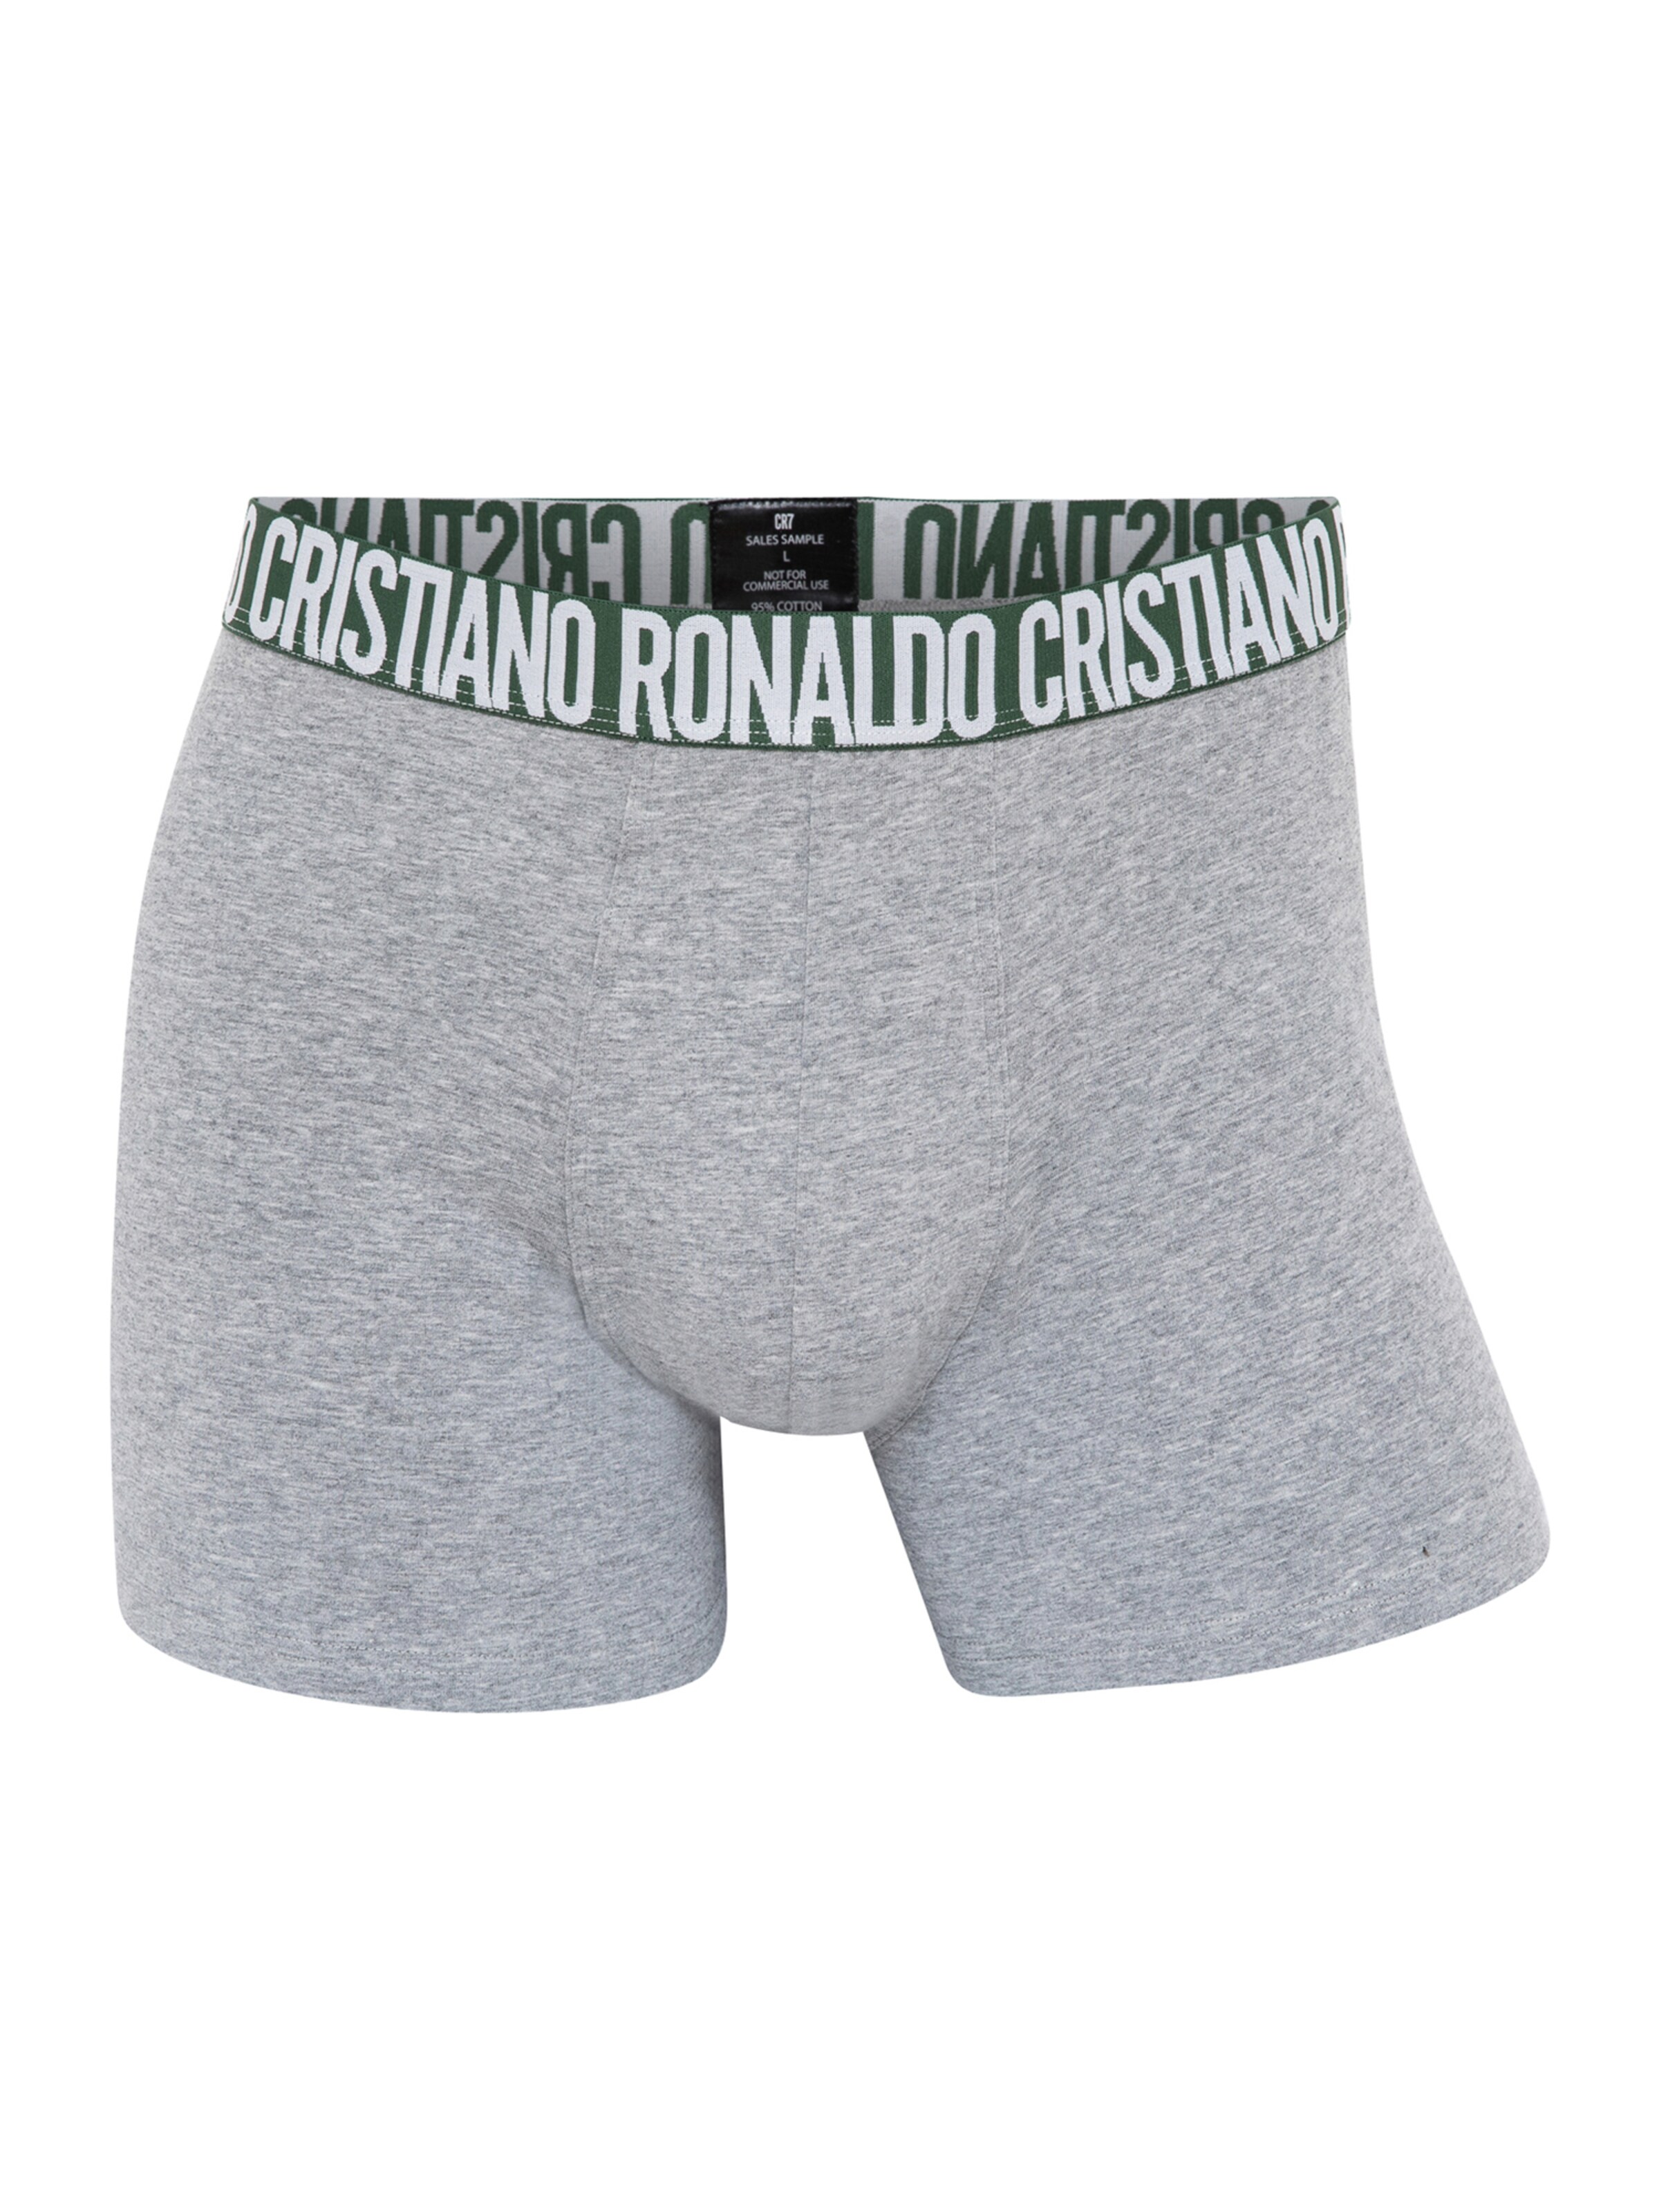 Männer Wäsche CR7 - Cristiano Ronaldo Trunks ' BASIC ' in Mischfarben - DE83452